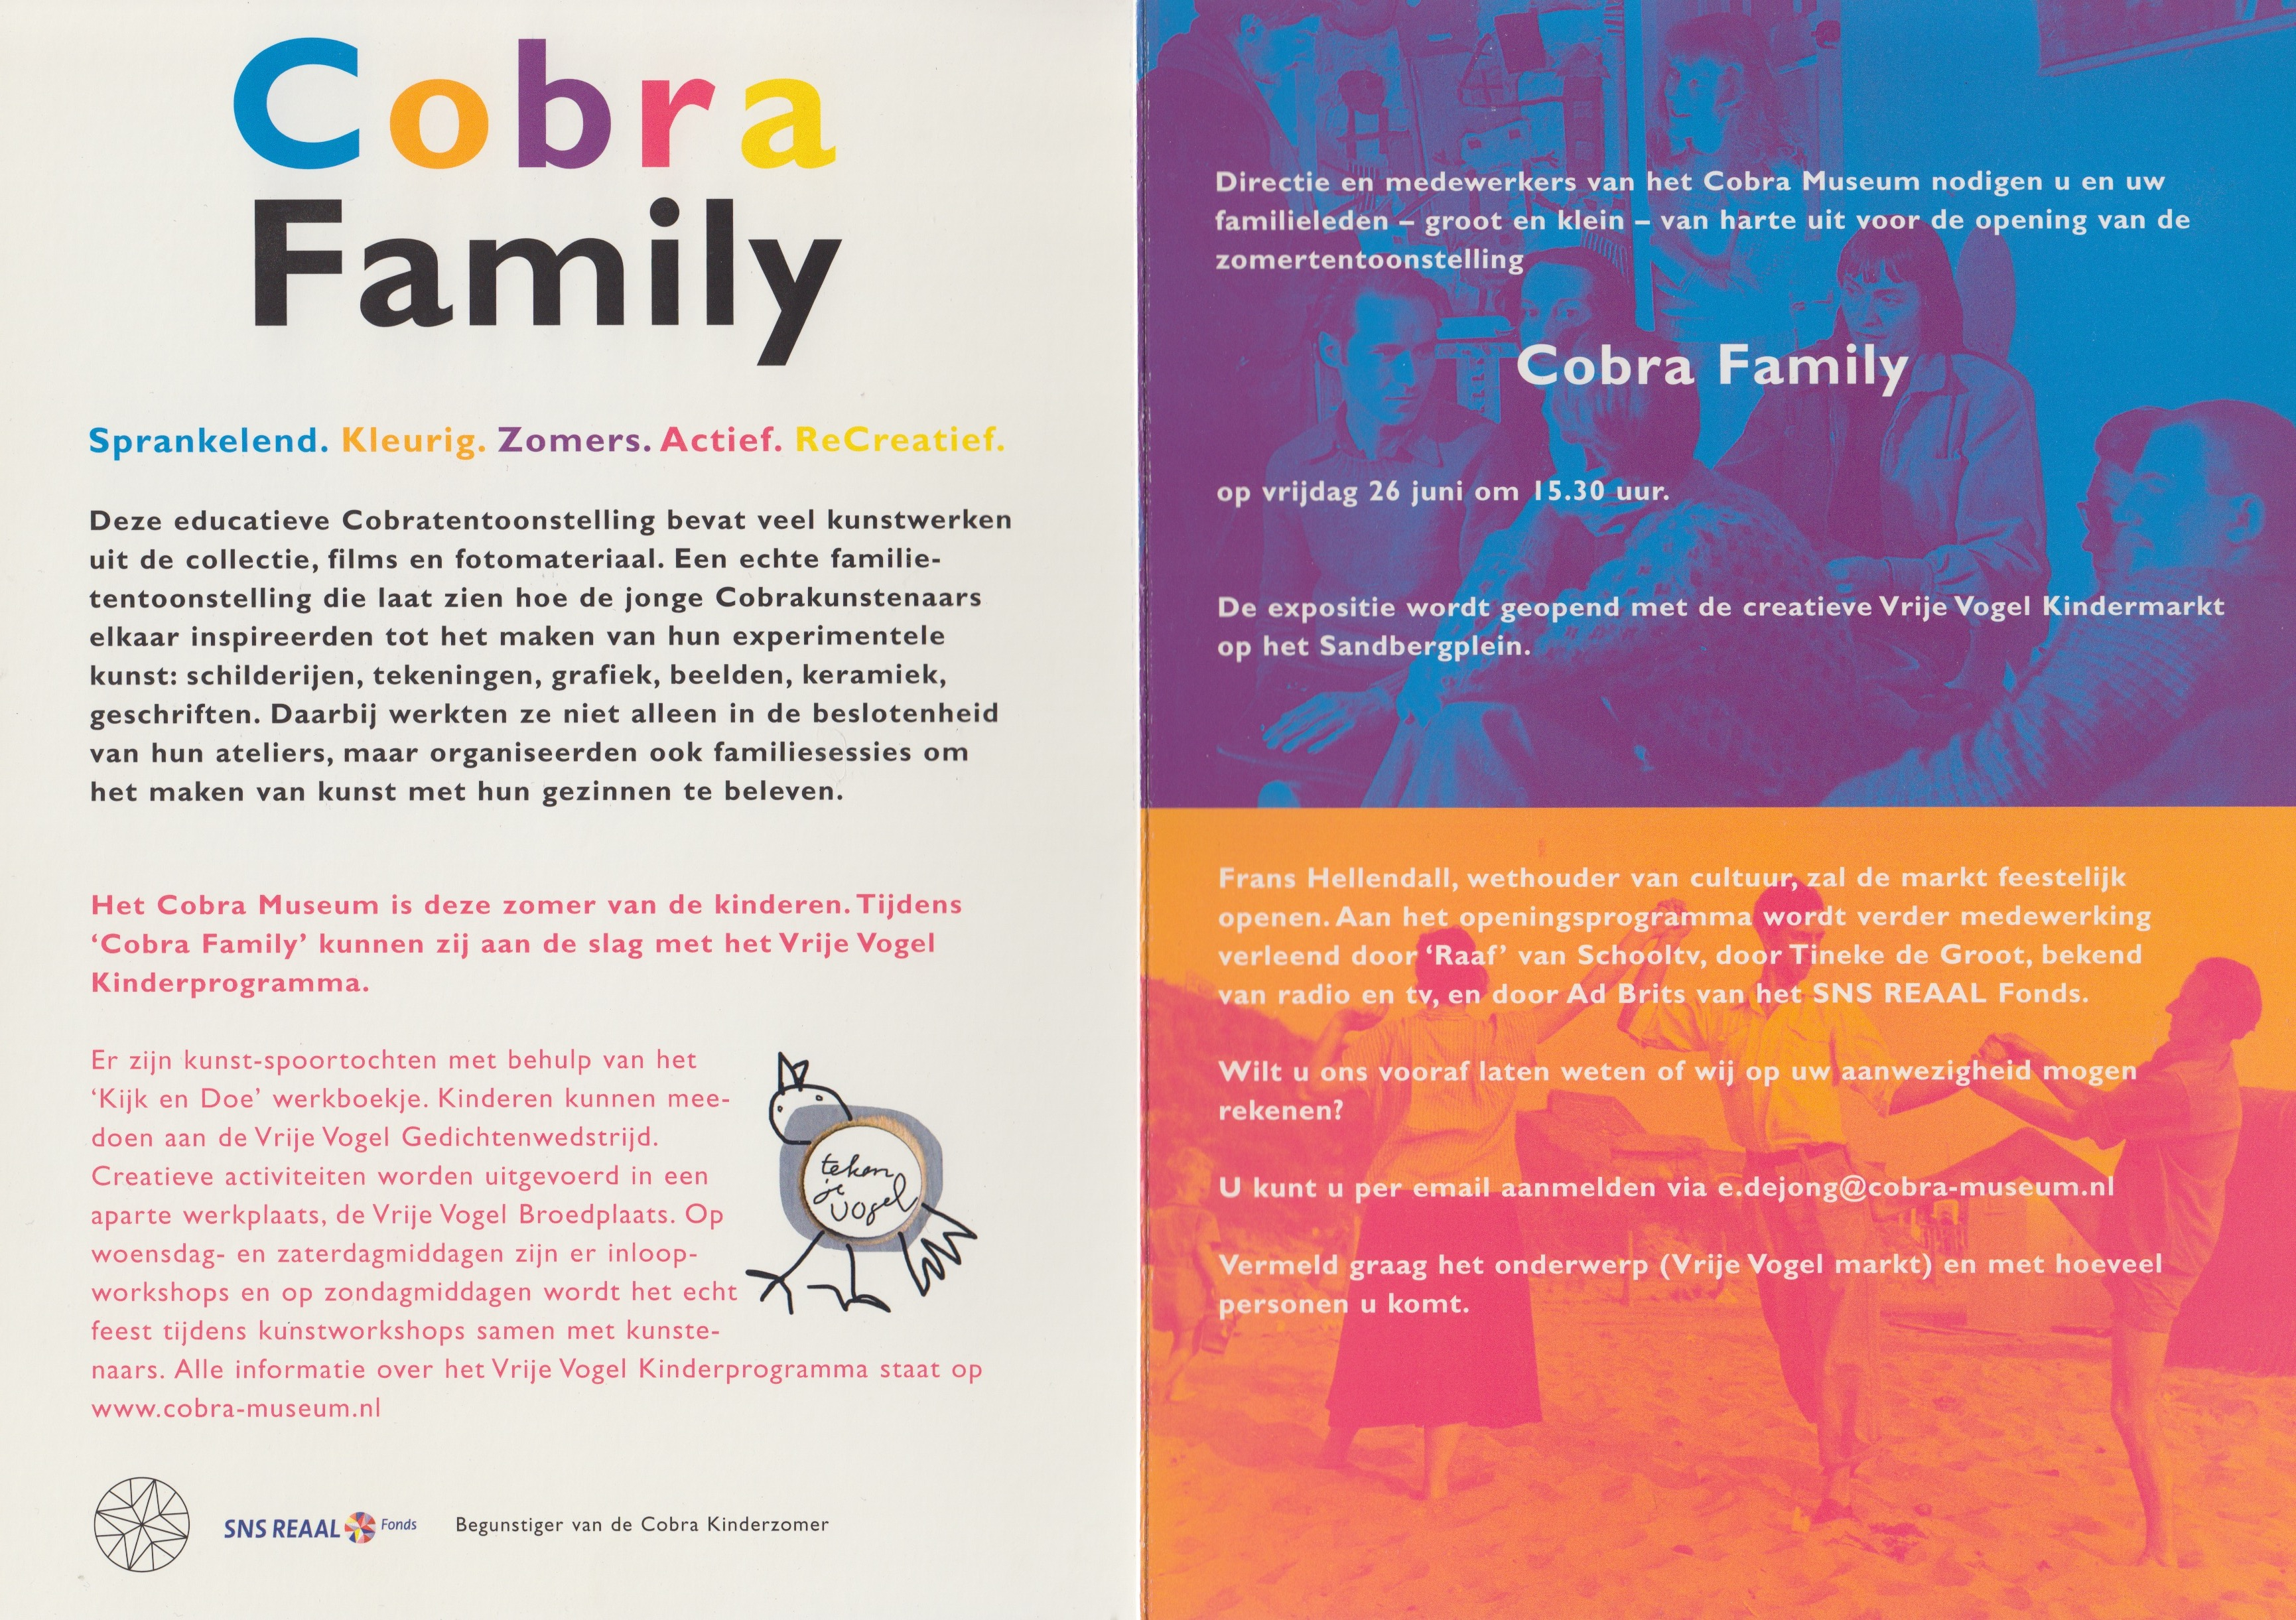 Cobra Family | Cobra Museum, 2009-2